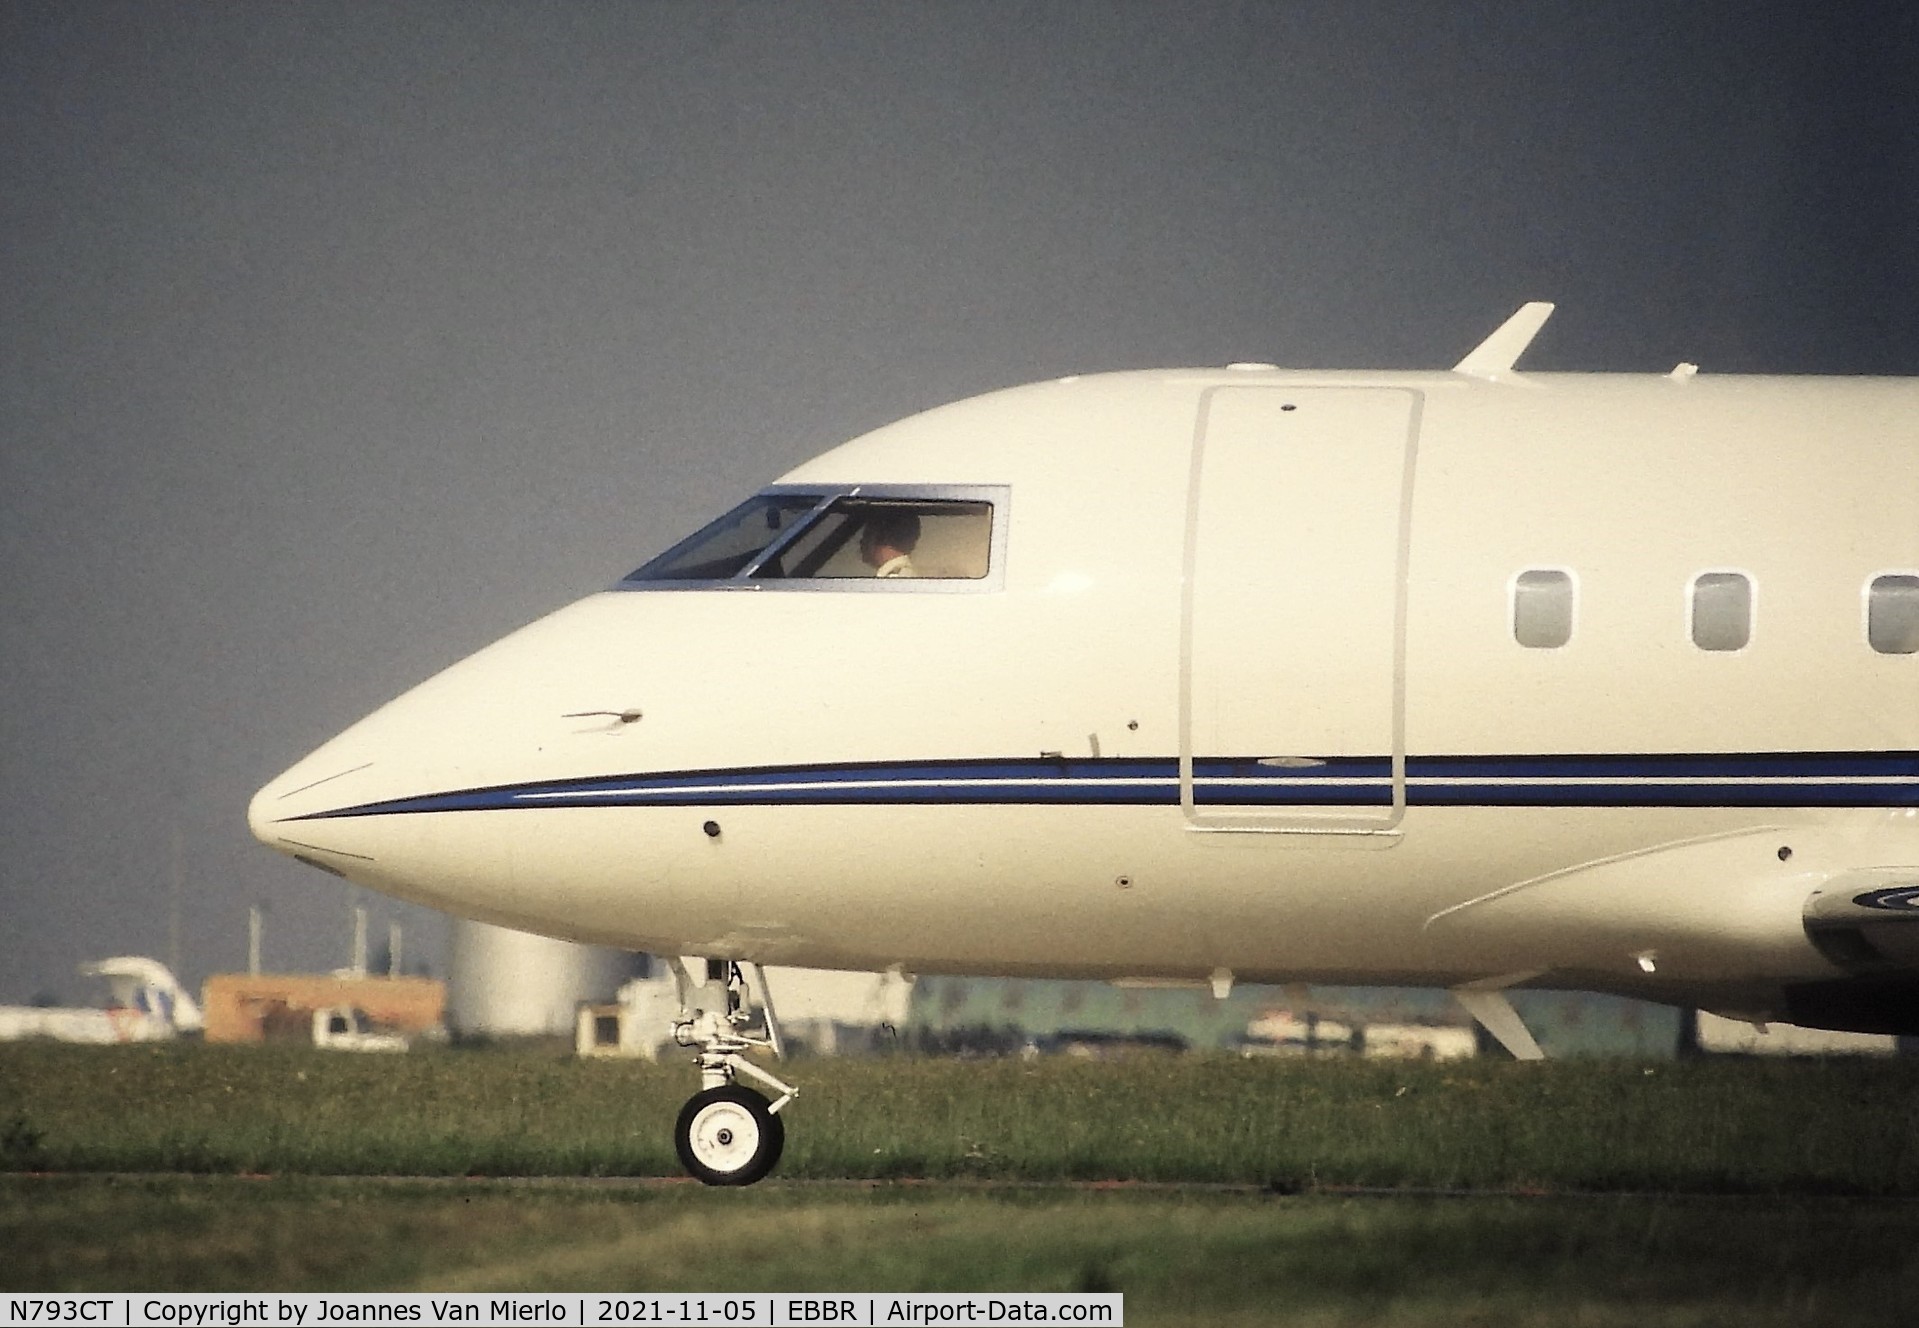 N793CT, 2006 Bombardier Challenger 604 C/N 5643, Slide scan